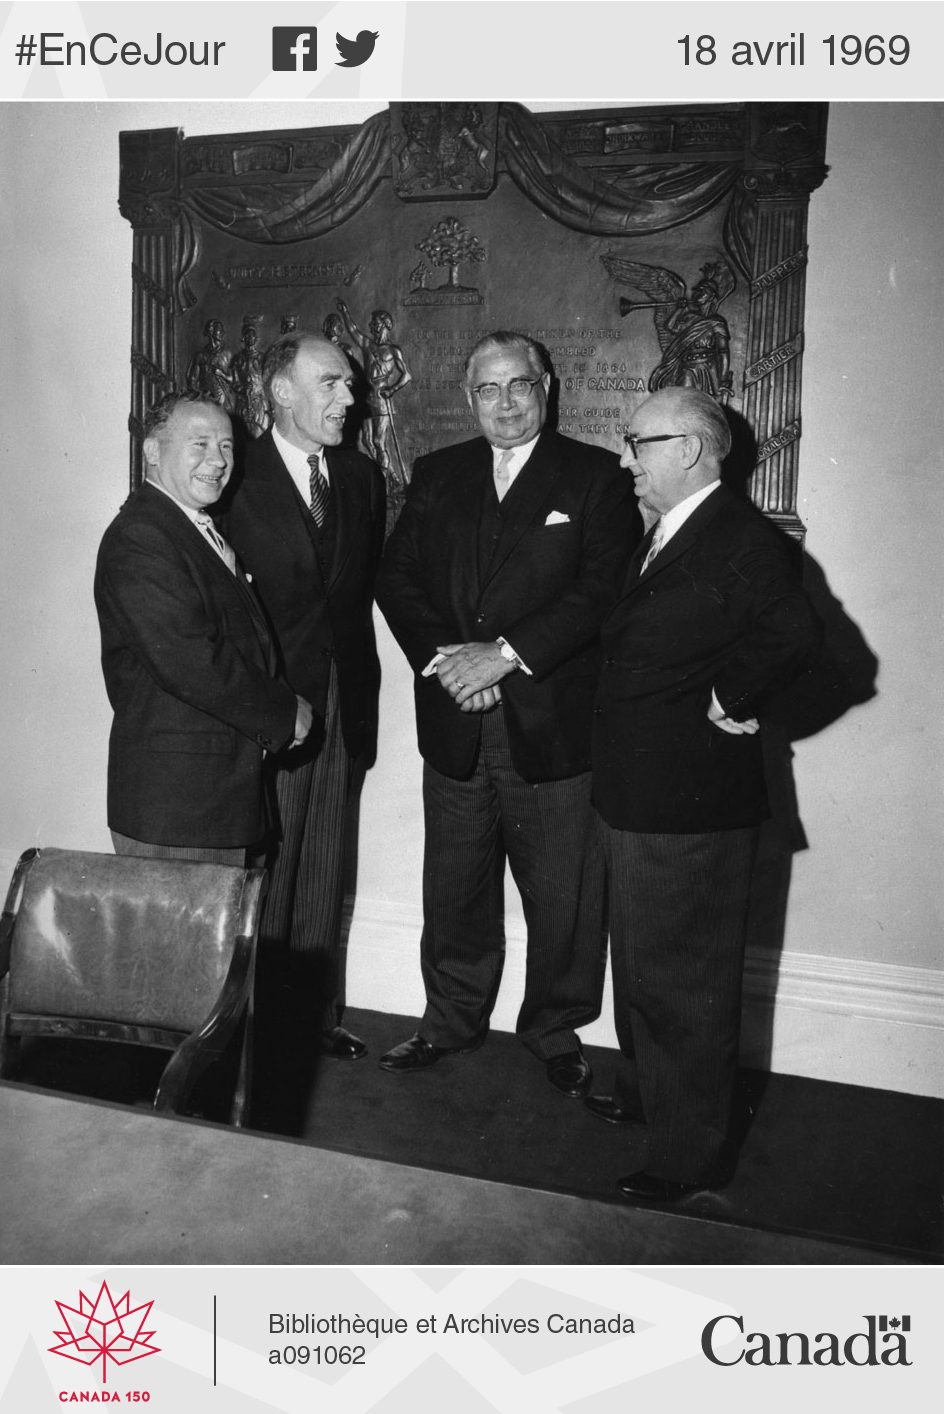 Le premier ministre du Nouveau-Brunswick, Louis J. Robichaud (premier à gauche), pose en compagnie de ses homologues Robert Stanfield (Nouvelle-Écosse), Walter R. Shaw (Île-du-Prince-Édouard) et Joey Smallwood (Terre-Neuve-et-Labrador) lors du centenaire de la Conférence de Charlottetown, en 1964.